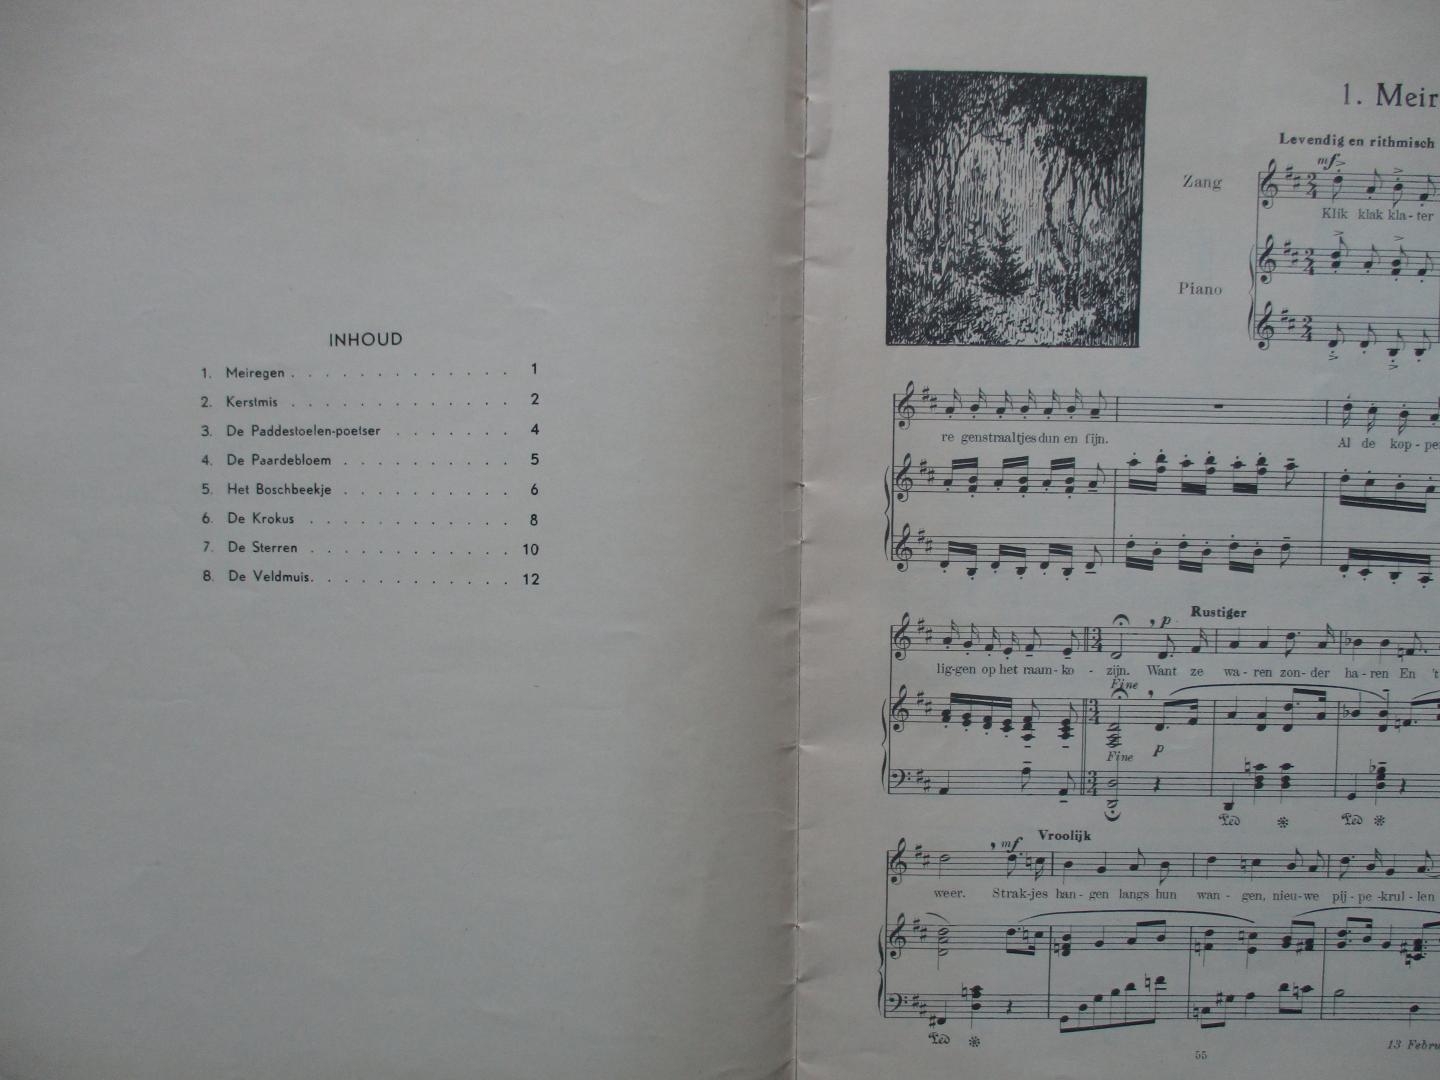 Tomkins, David - Vonkjes    8 kindergedichtjes van David Tomkins op muziek gezet door Lottie Koekoek